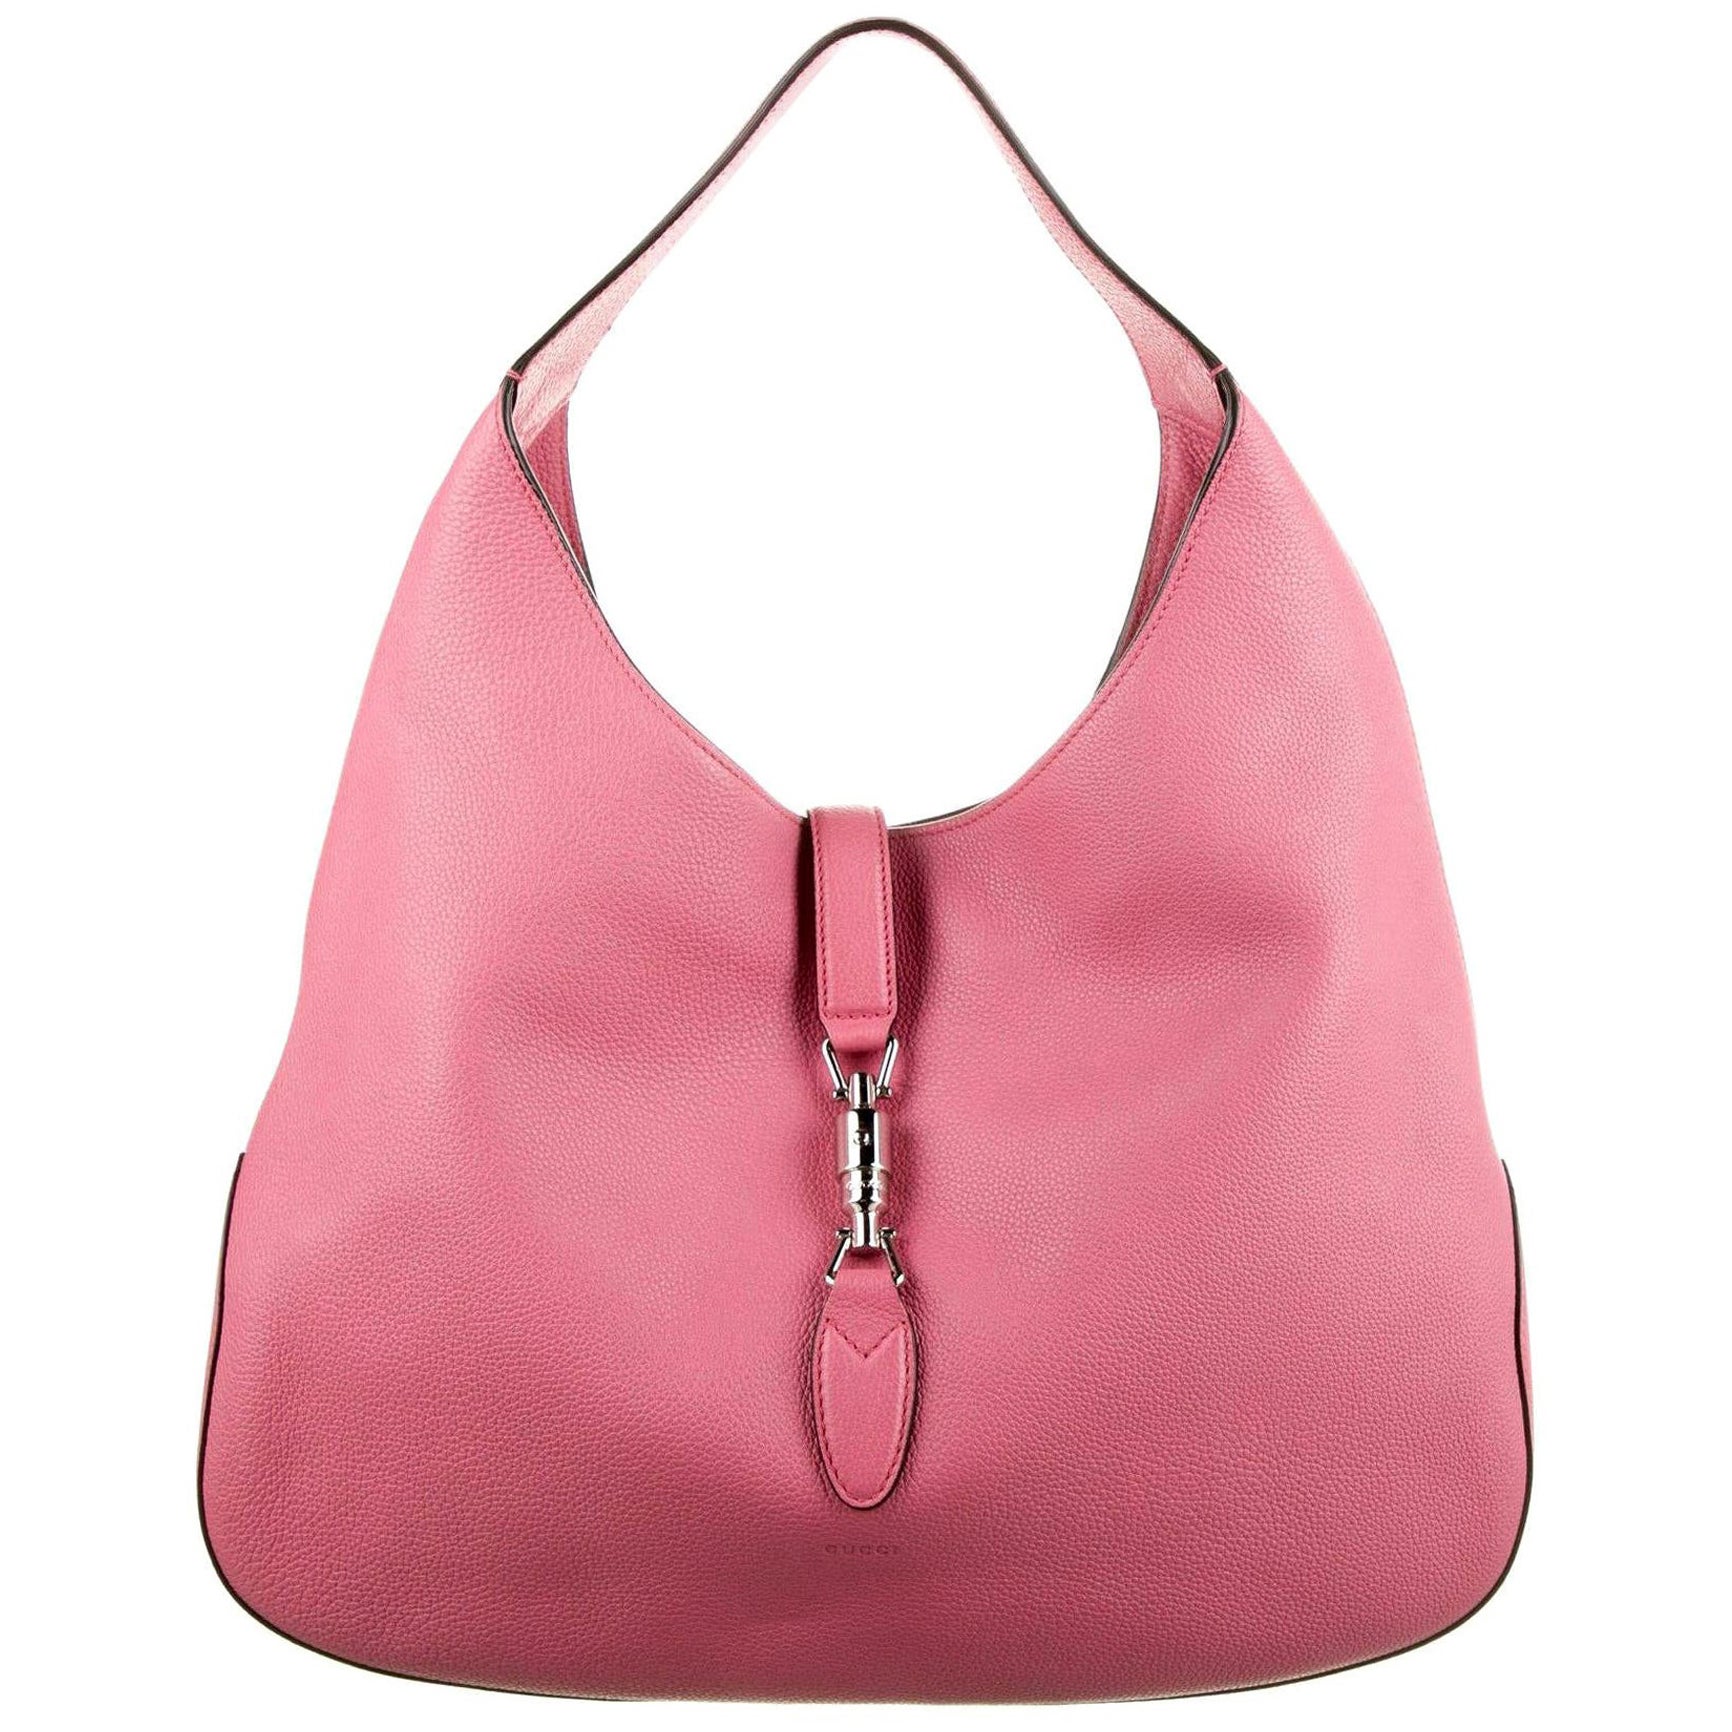 Nouveauté Gucci extra large sac Jackie O Gaga en cuir rose 3595 $ automne 2014 en vente